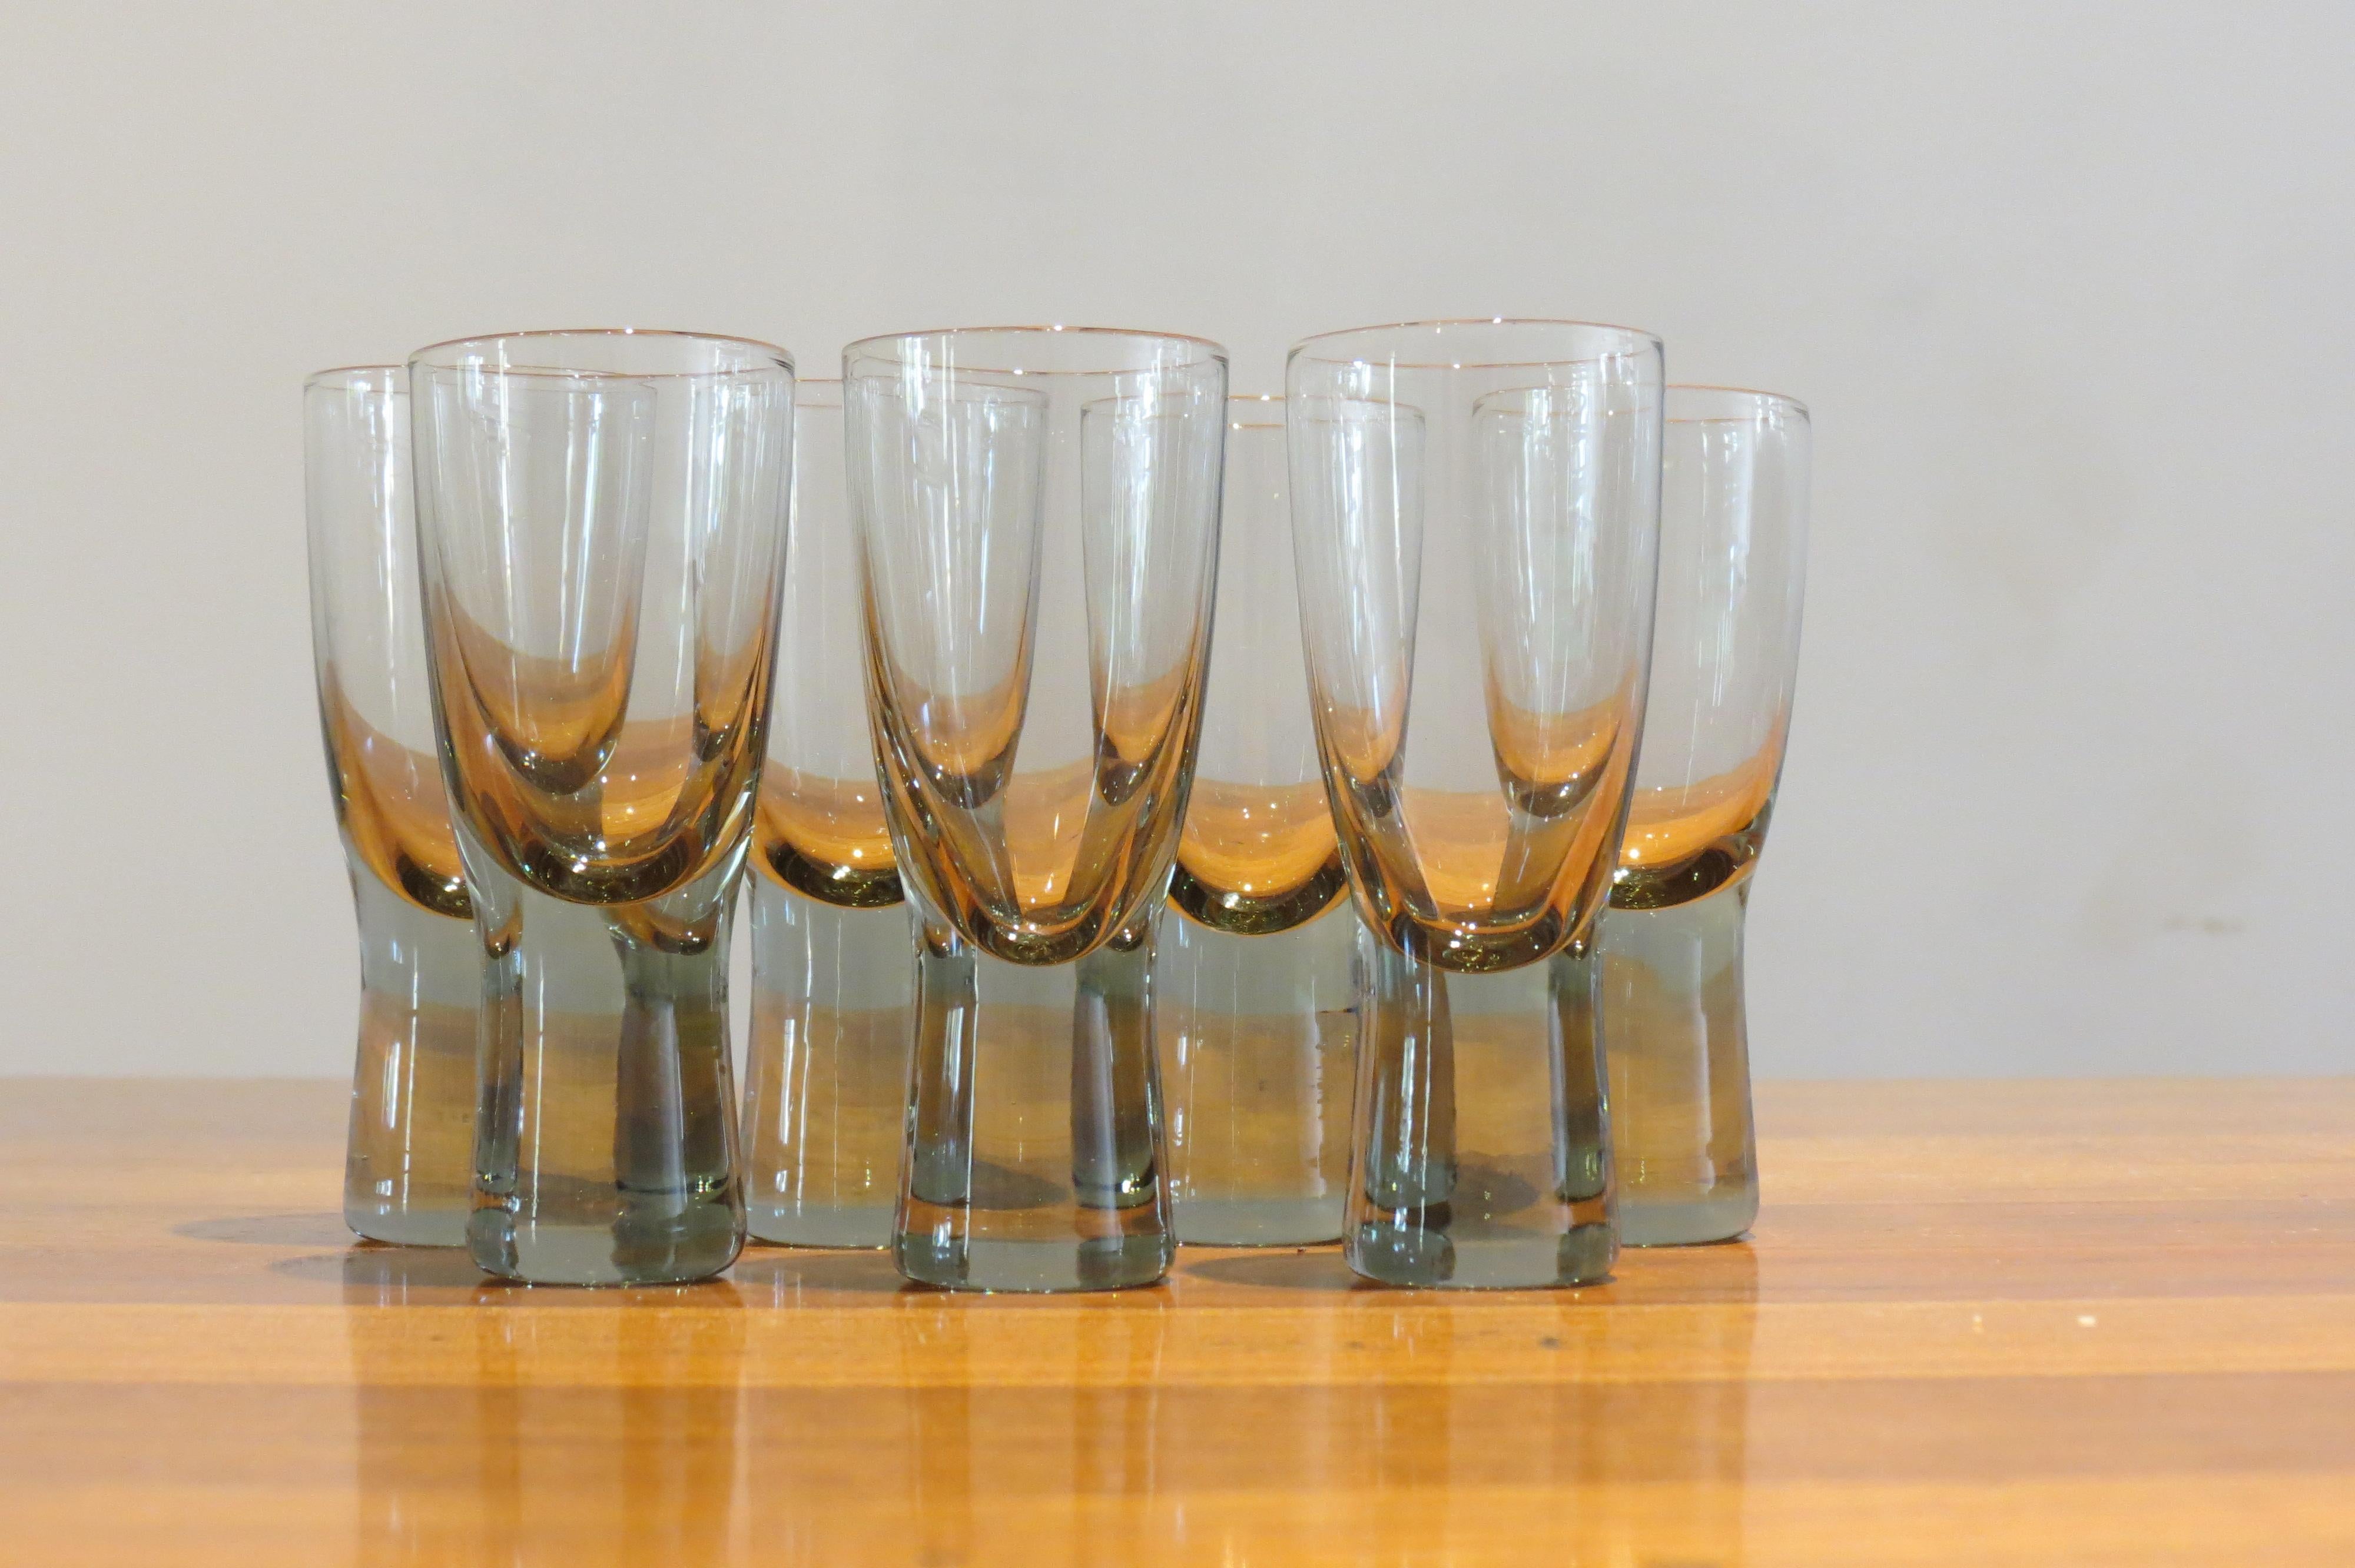 Holmegaard Canada glasses by Per Lutken
A set of seven vintage Holmegaard glasses.
Designed by Per Lutken, model Canada, 1950s.
Smoked glass
Good condition
Measures: 8 cm tall, 3.2cm diameter widest point
St927.

          